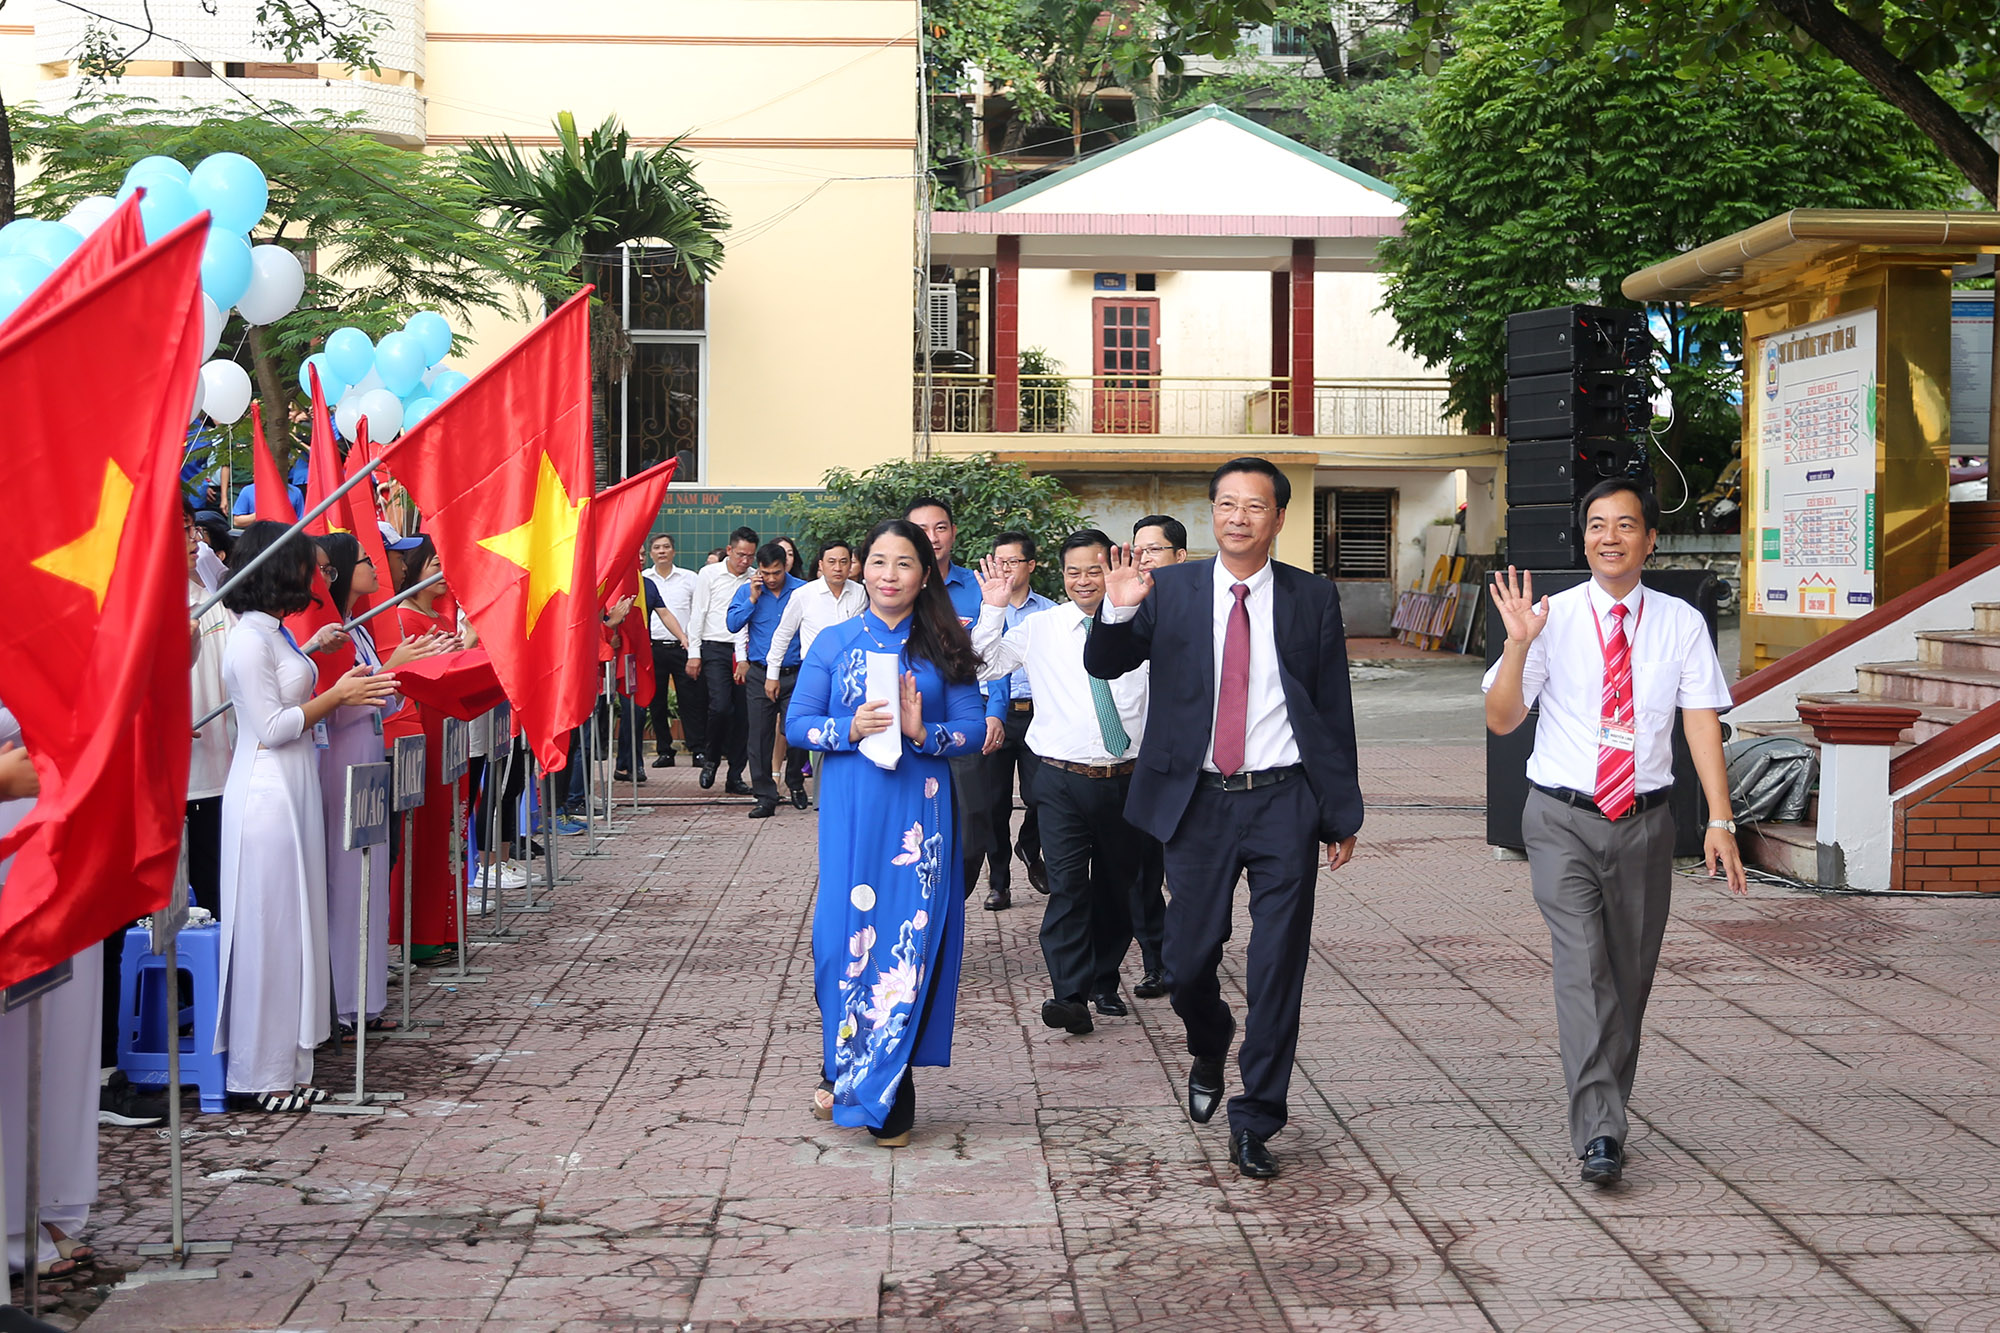 Đồng chí Nguyễn Văn Đọc, Bí thư Tỉnh ủy, Chủ tịch HĐND tỉnh dự lễ Khai giảng tại trường THPT Hòn Gai.